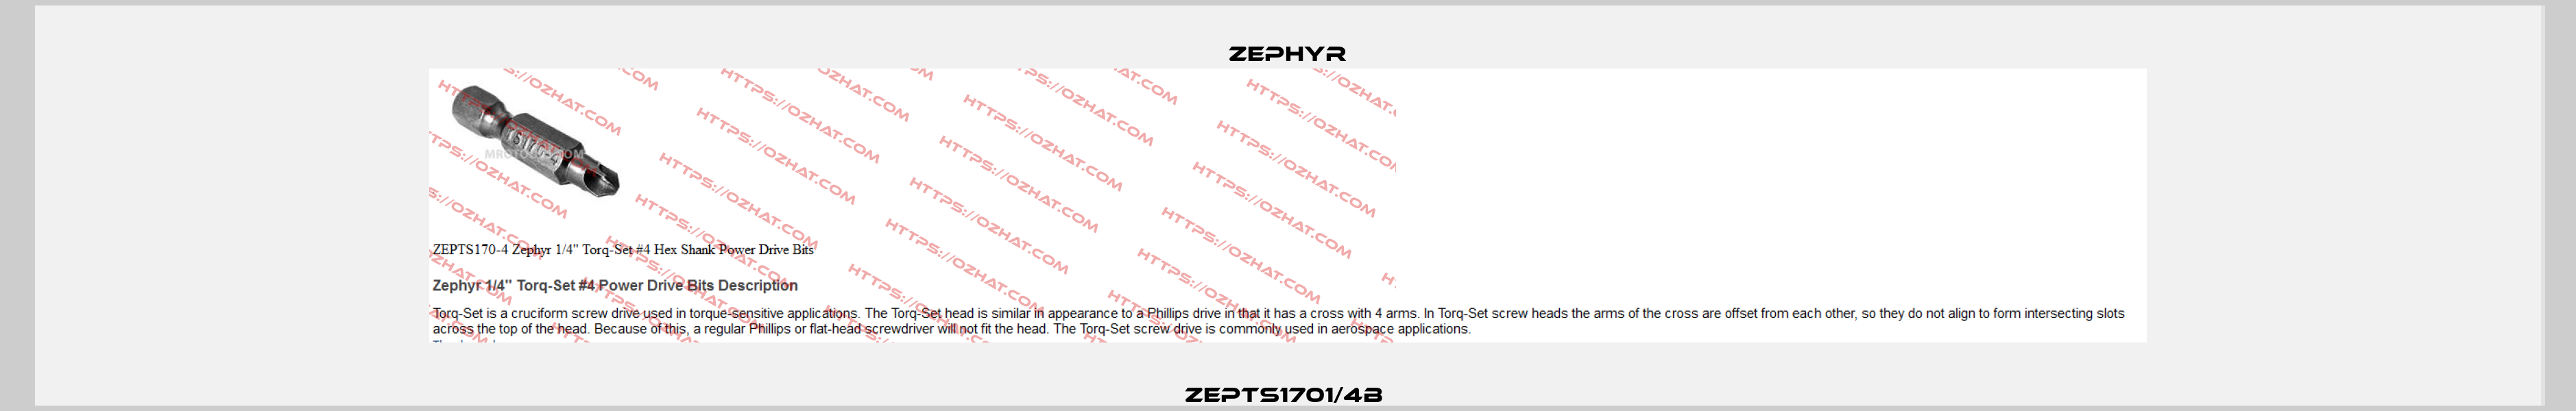 ZEPTS1701/4B  Zephyr